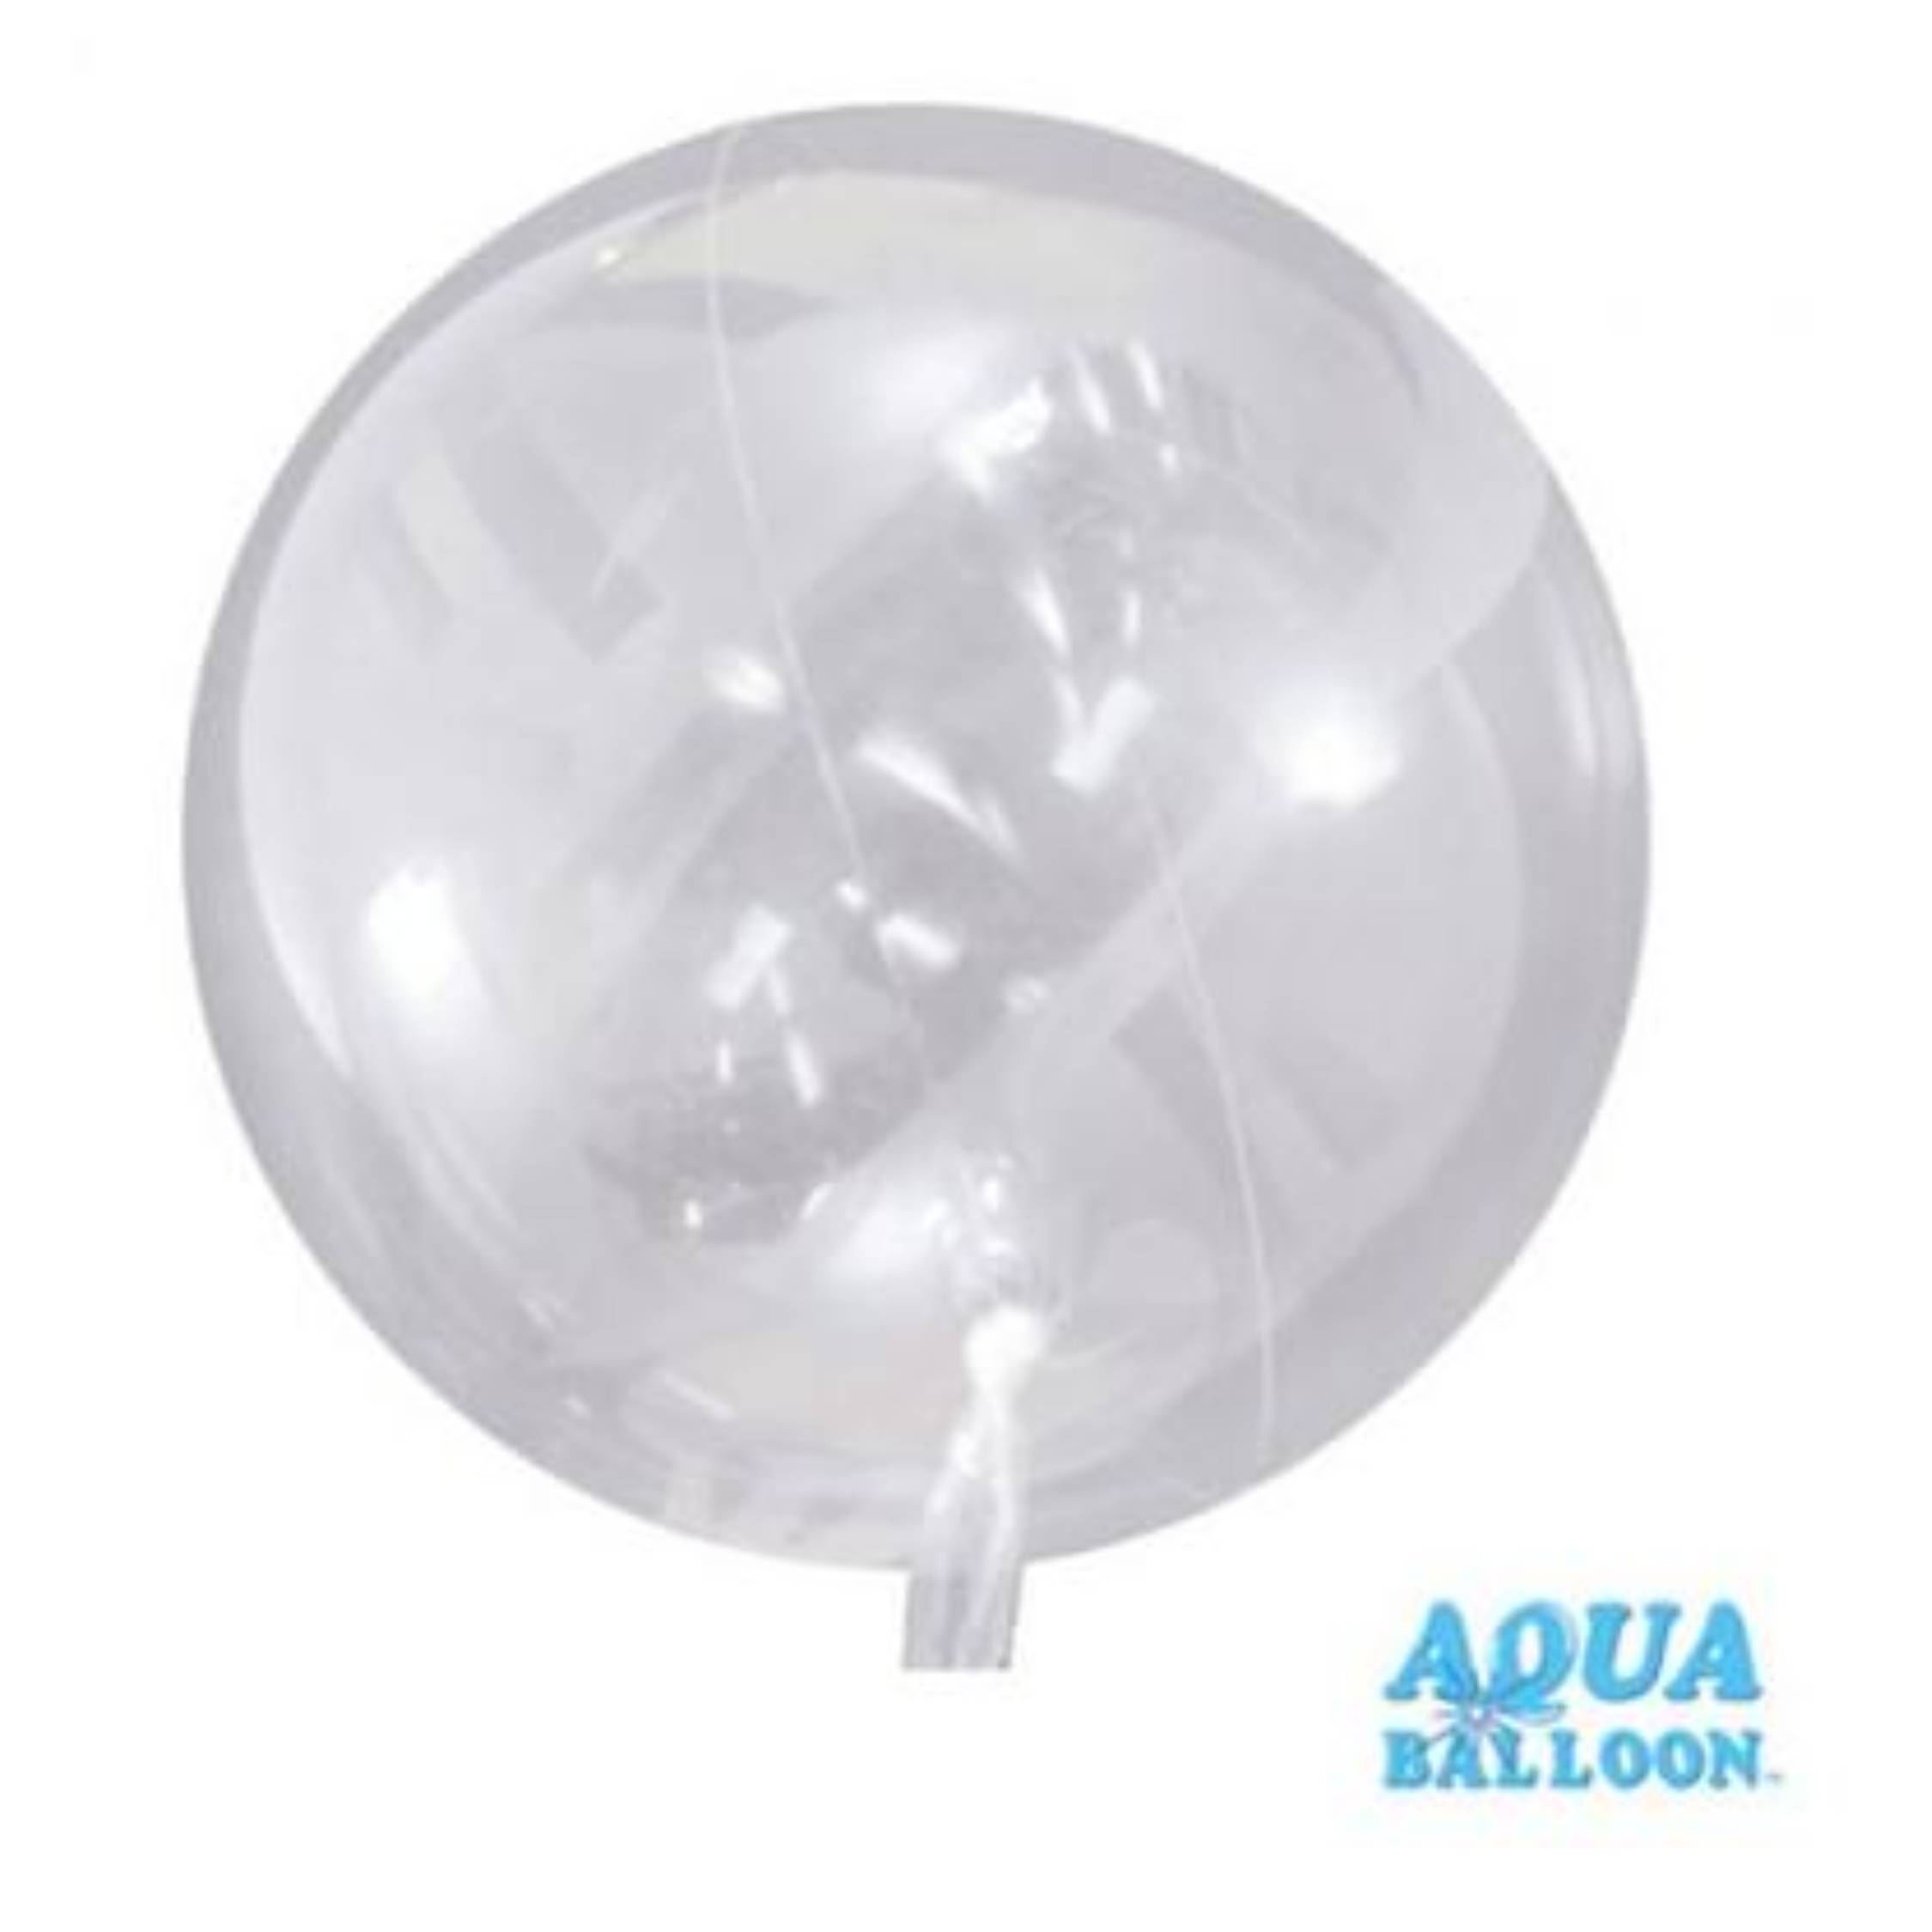 Aqua Balloons-Square foil